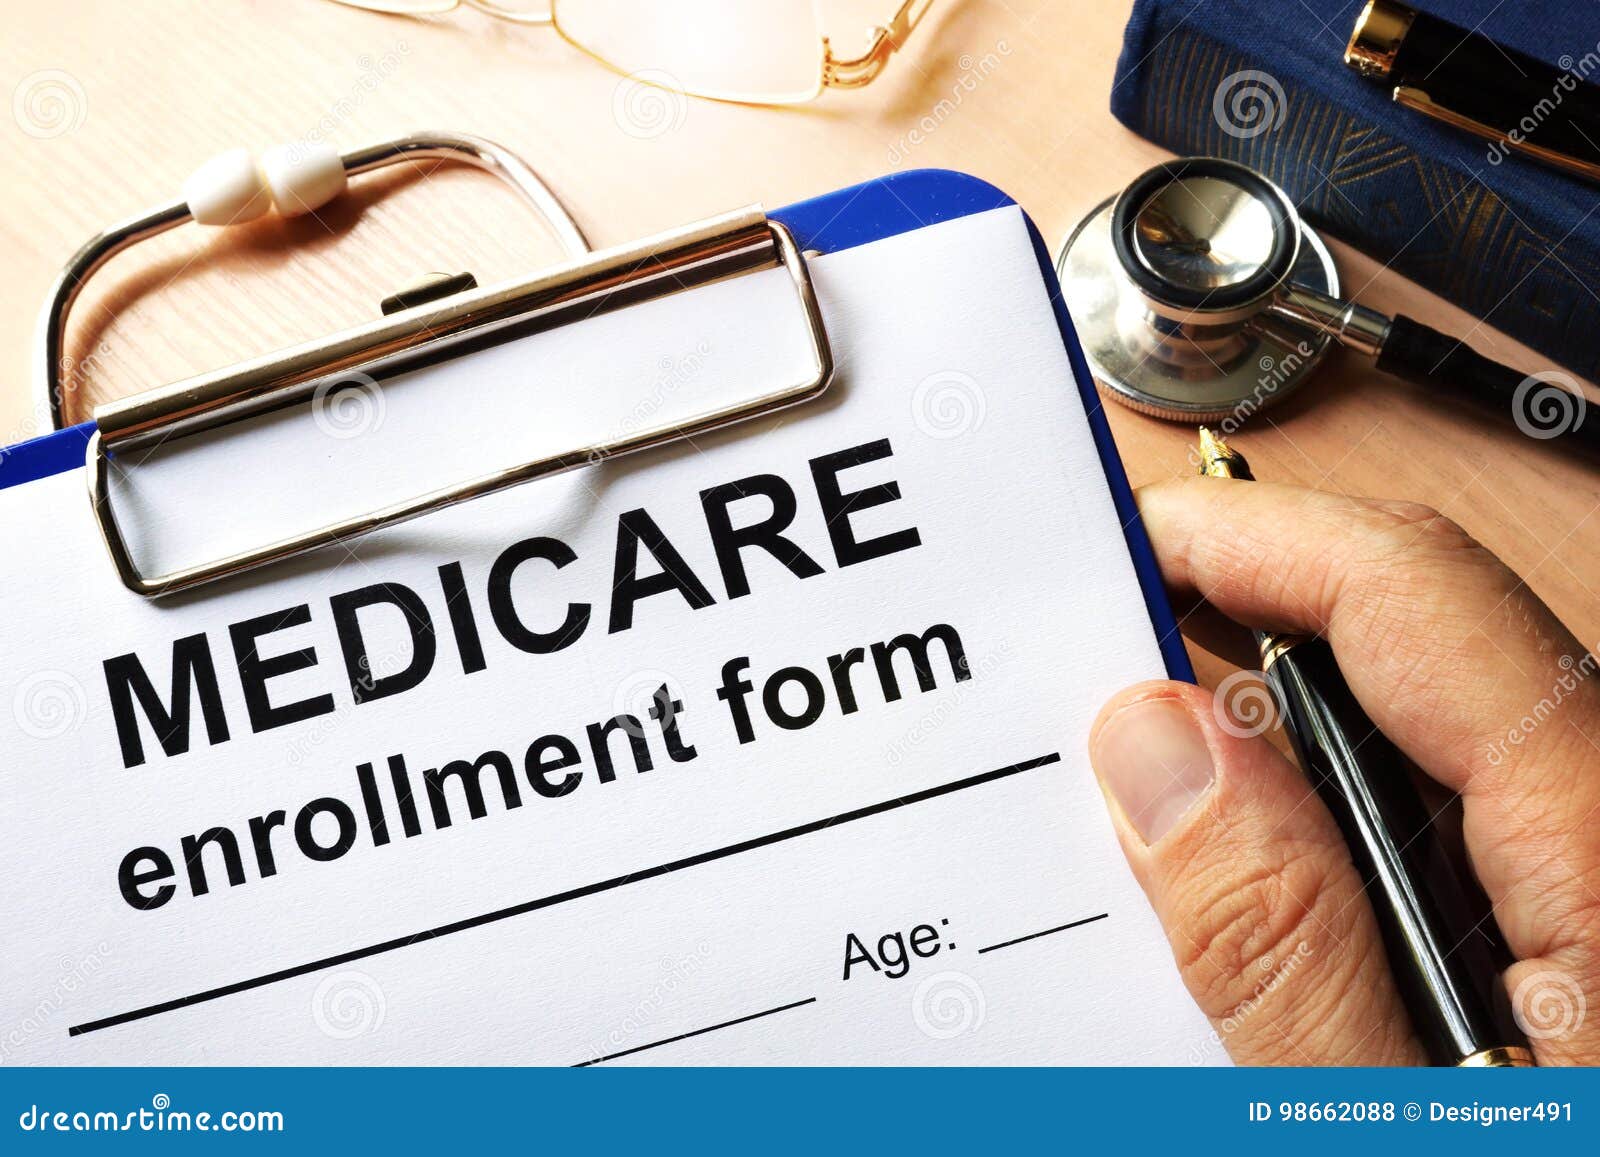 medicare enrollment form.